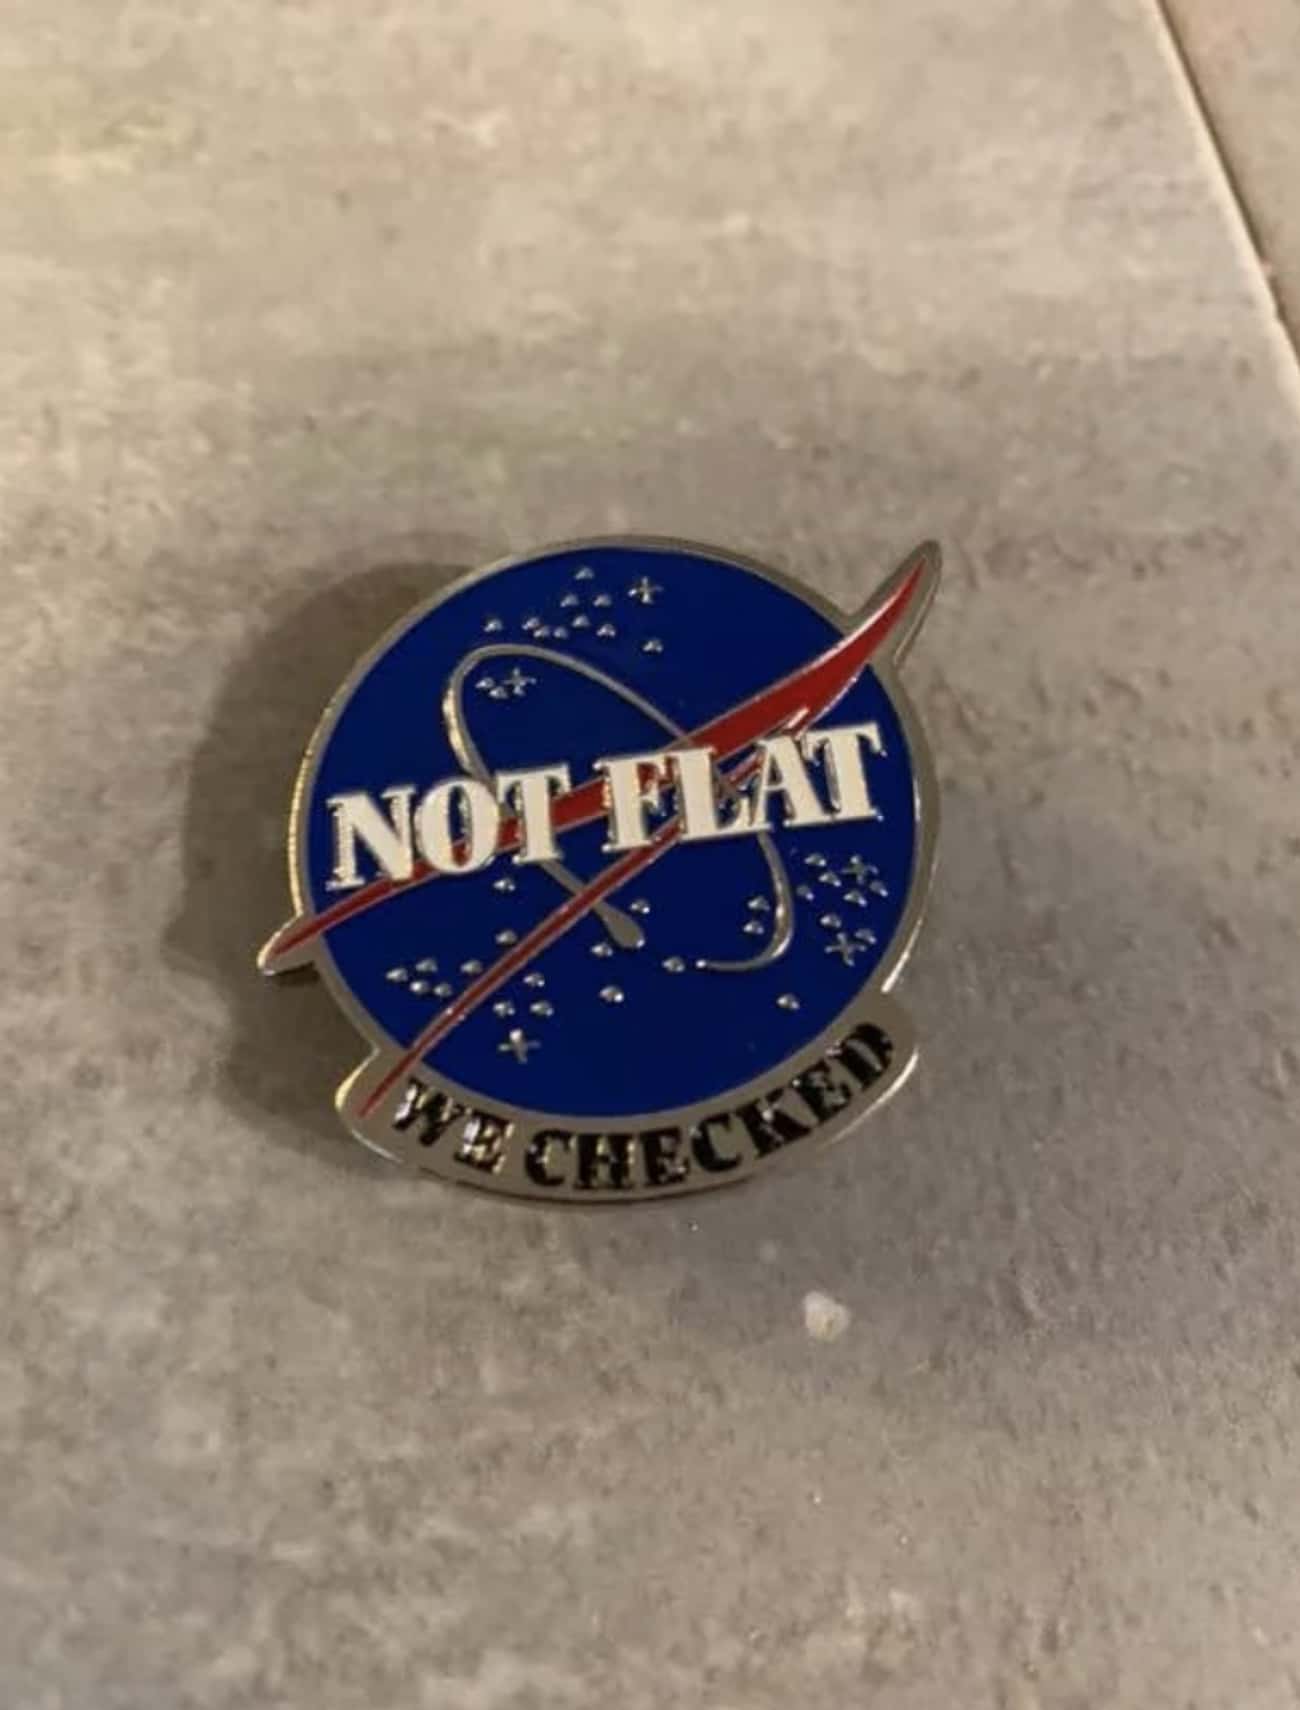 This NASA Pin